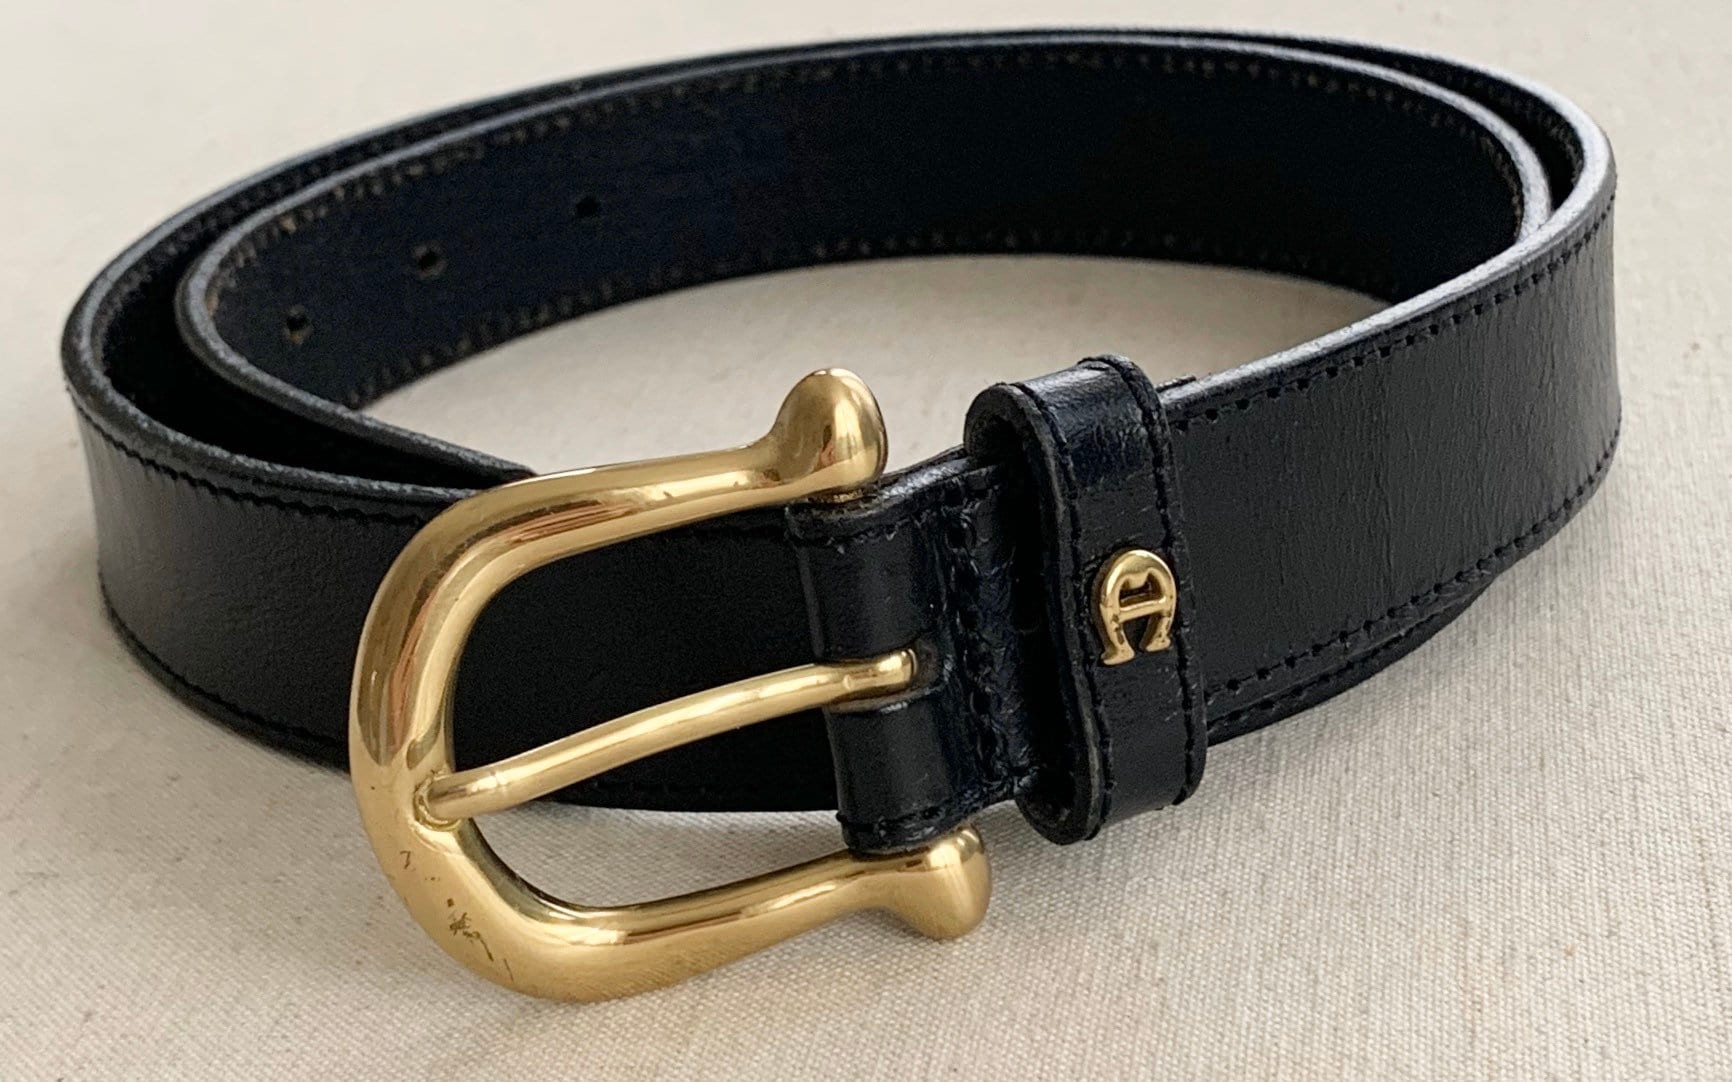 Etienne Aigner Belt Black Leather Vintage Leather Goods Women's Belts ...